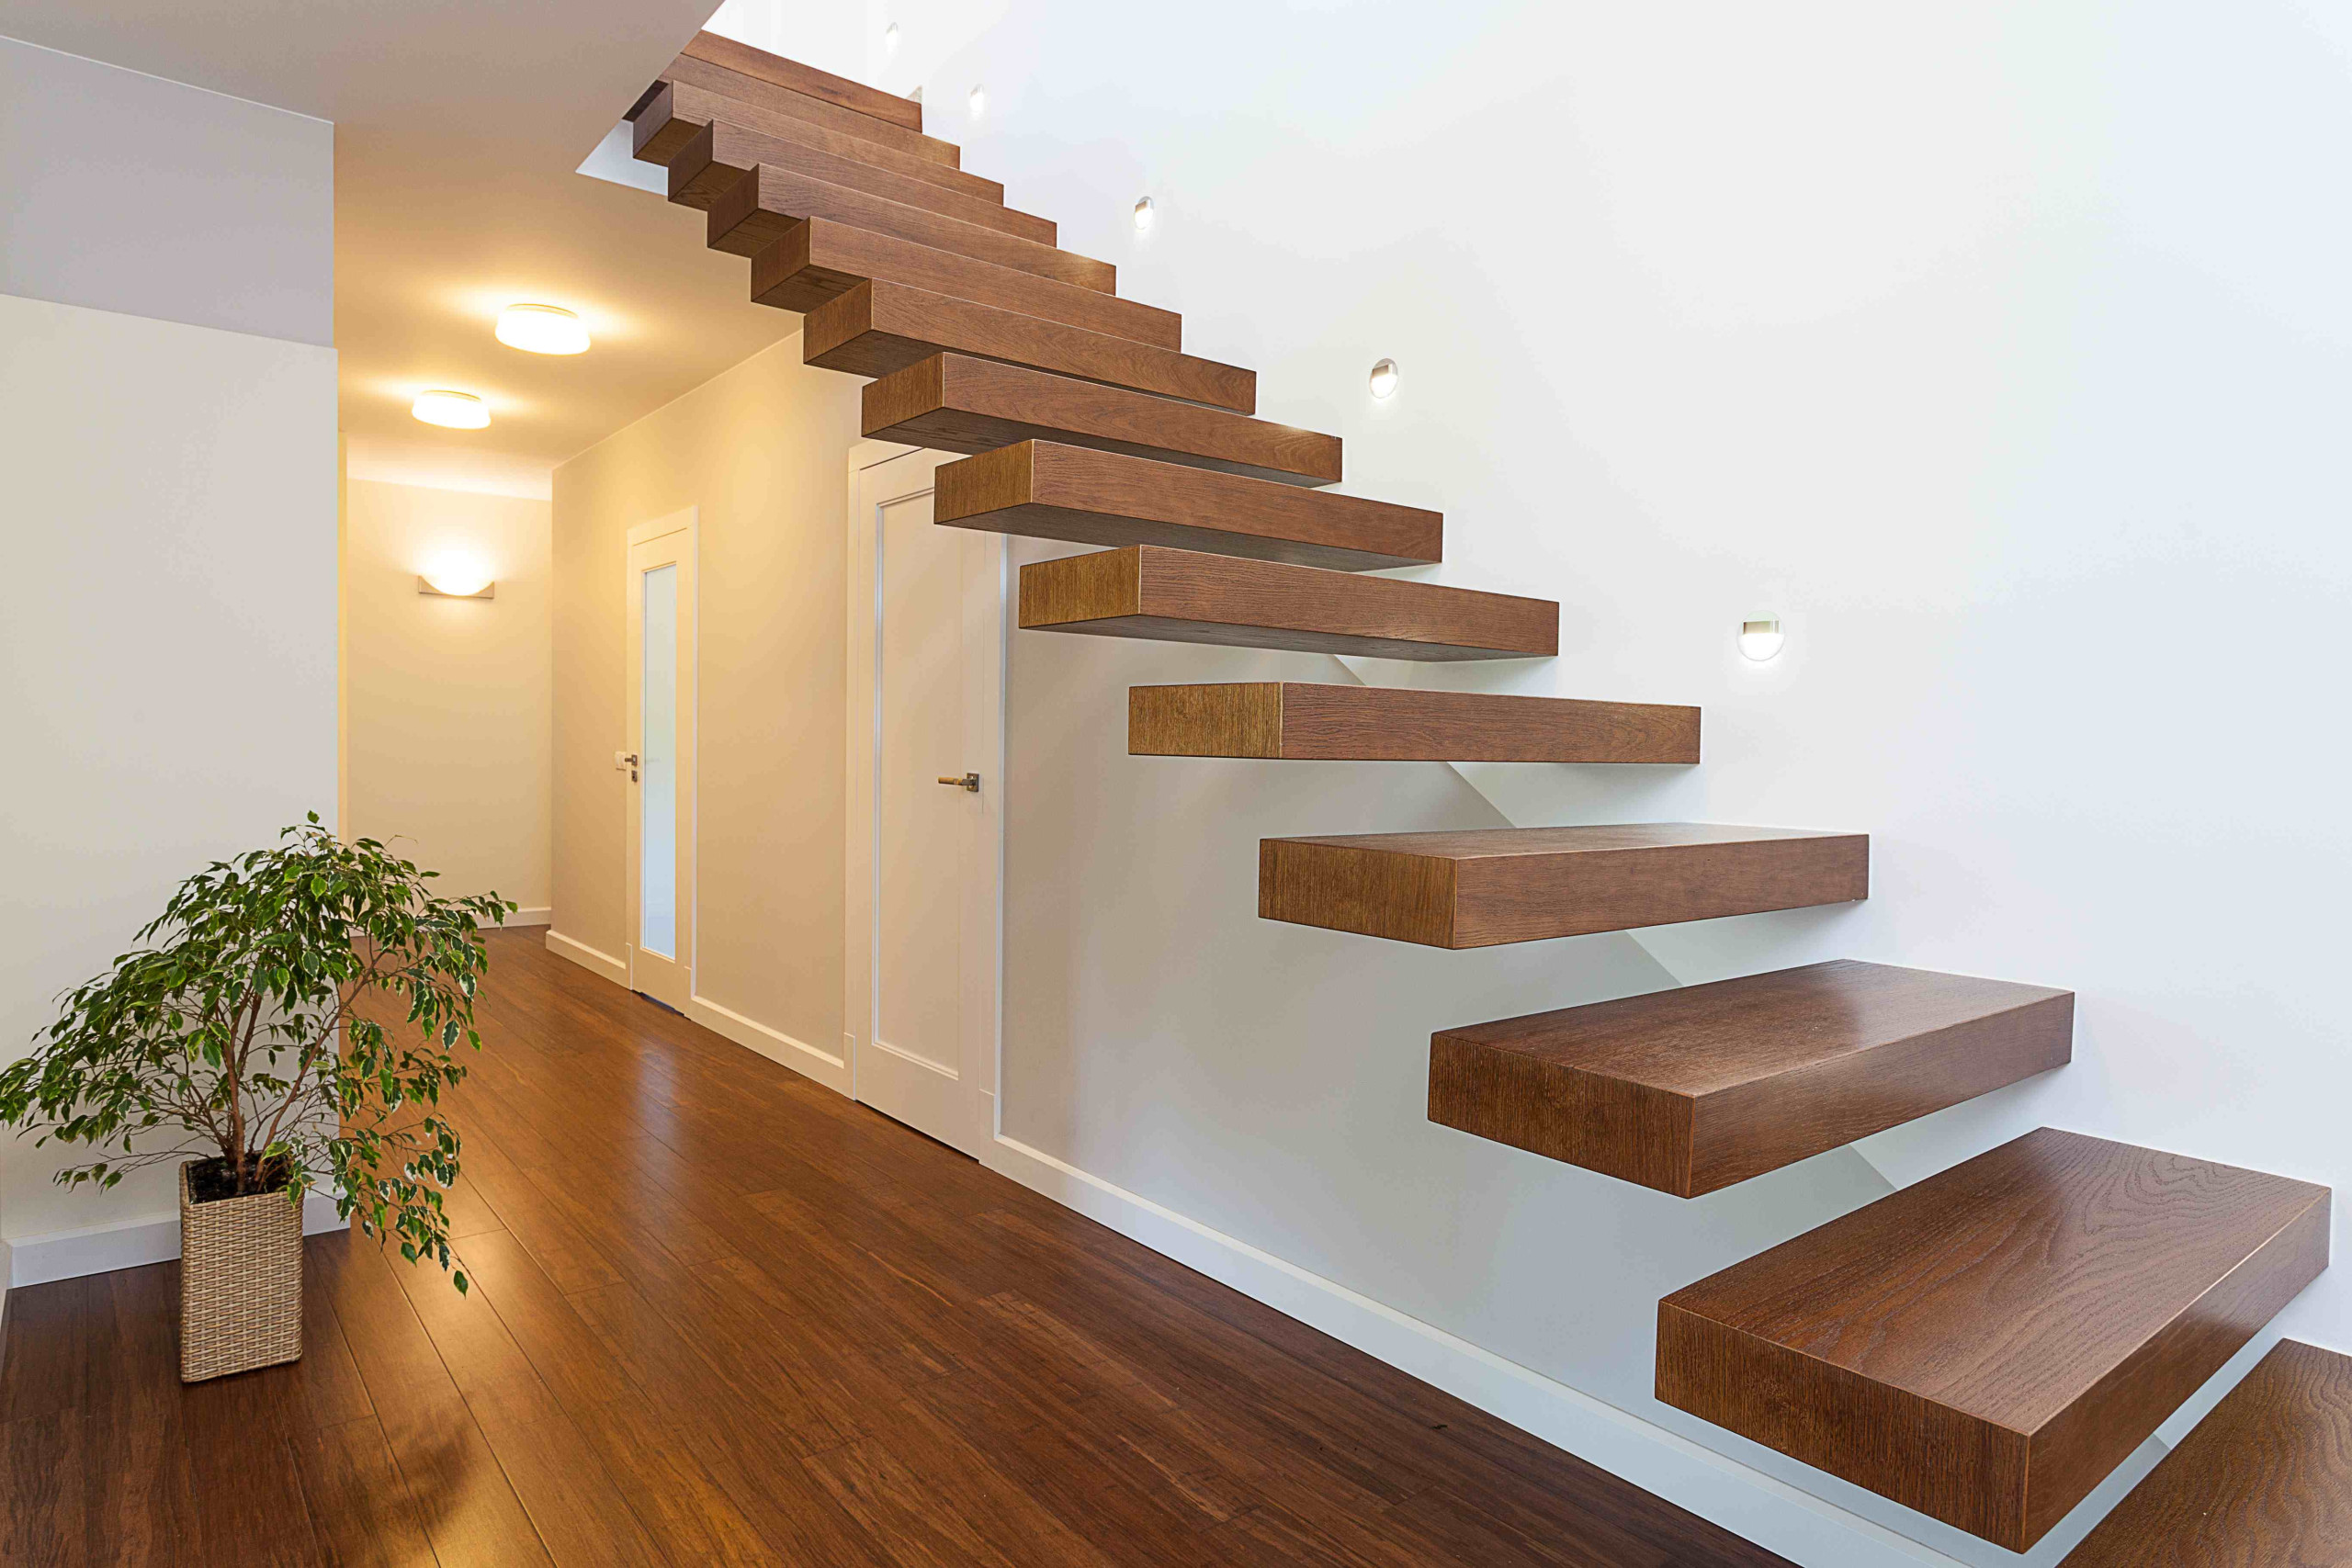 Customiser ses escaliers : 12 idées pour un relooking réussi  Peinture  escalier bois, Renovation escalier bois, Repeindre escalier